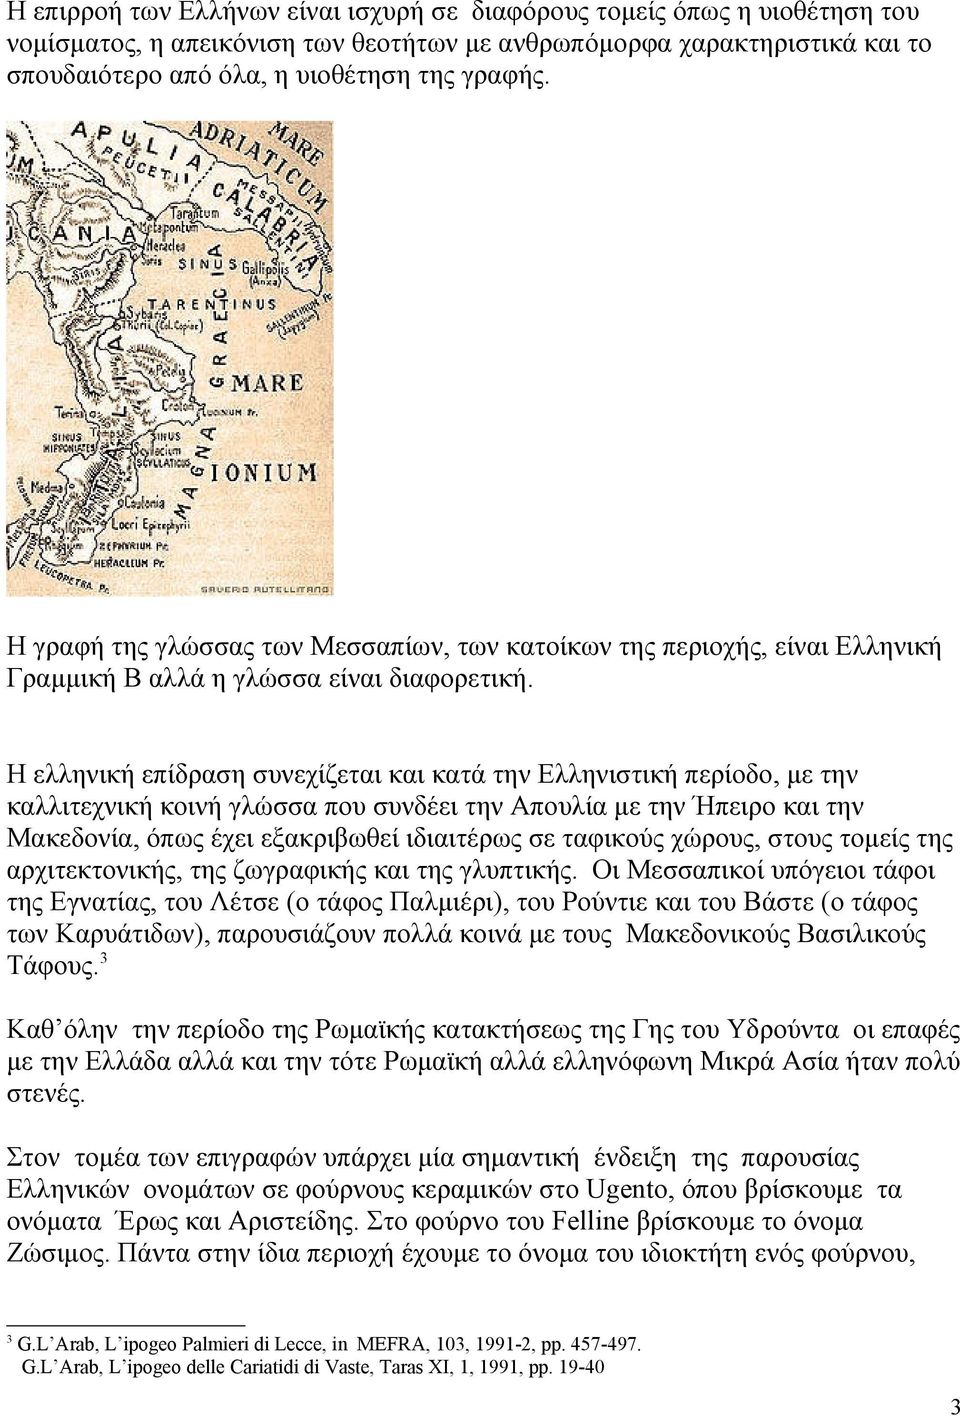 Η ελληνική επίδραση συνεχίζεται και κατά την Ελληνιστική περίοδο, με την καλλιτεχνική κοινή γλώσσα που συνδέει την Απουλία με την Ήπειρο και την Μακεδονία, όπως έχει εξακριβωθεί ιδιαιτέρως σε